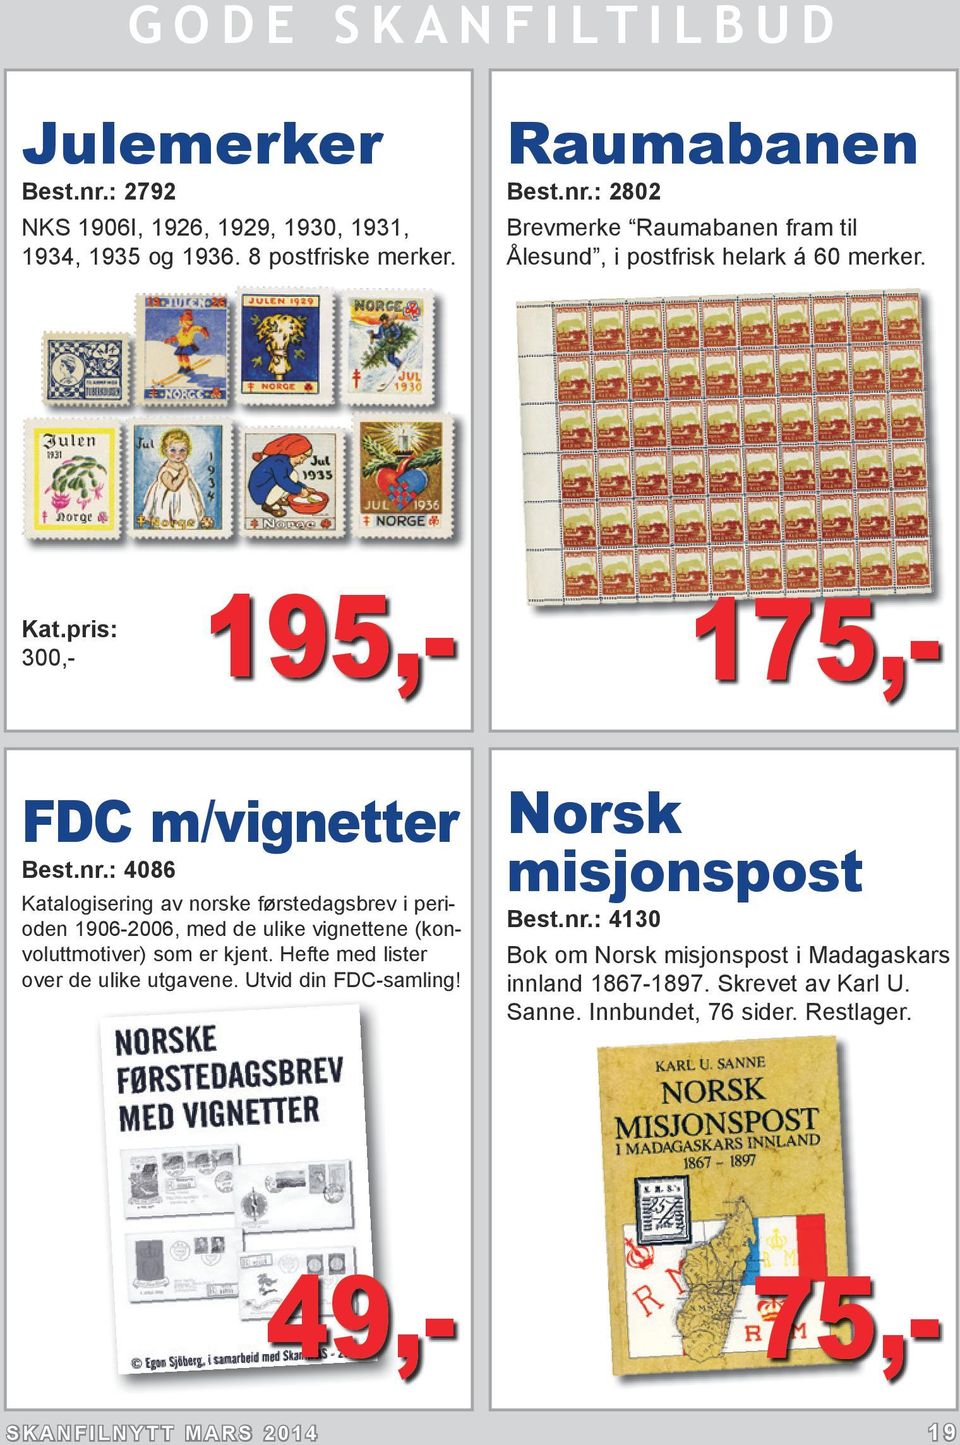 : 4086 Katalogisering av norske førstedagsbrev i perioden 1906-2006, med de ulike vignettene (konvoluttmotiver) som er kjent.